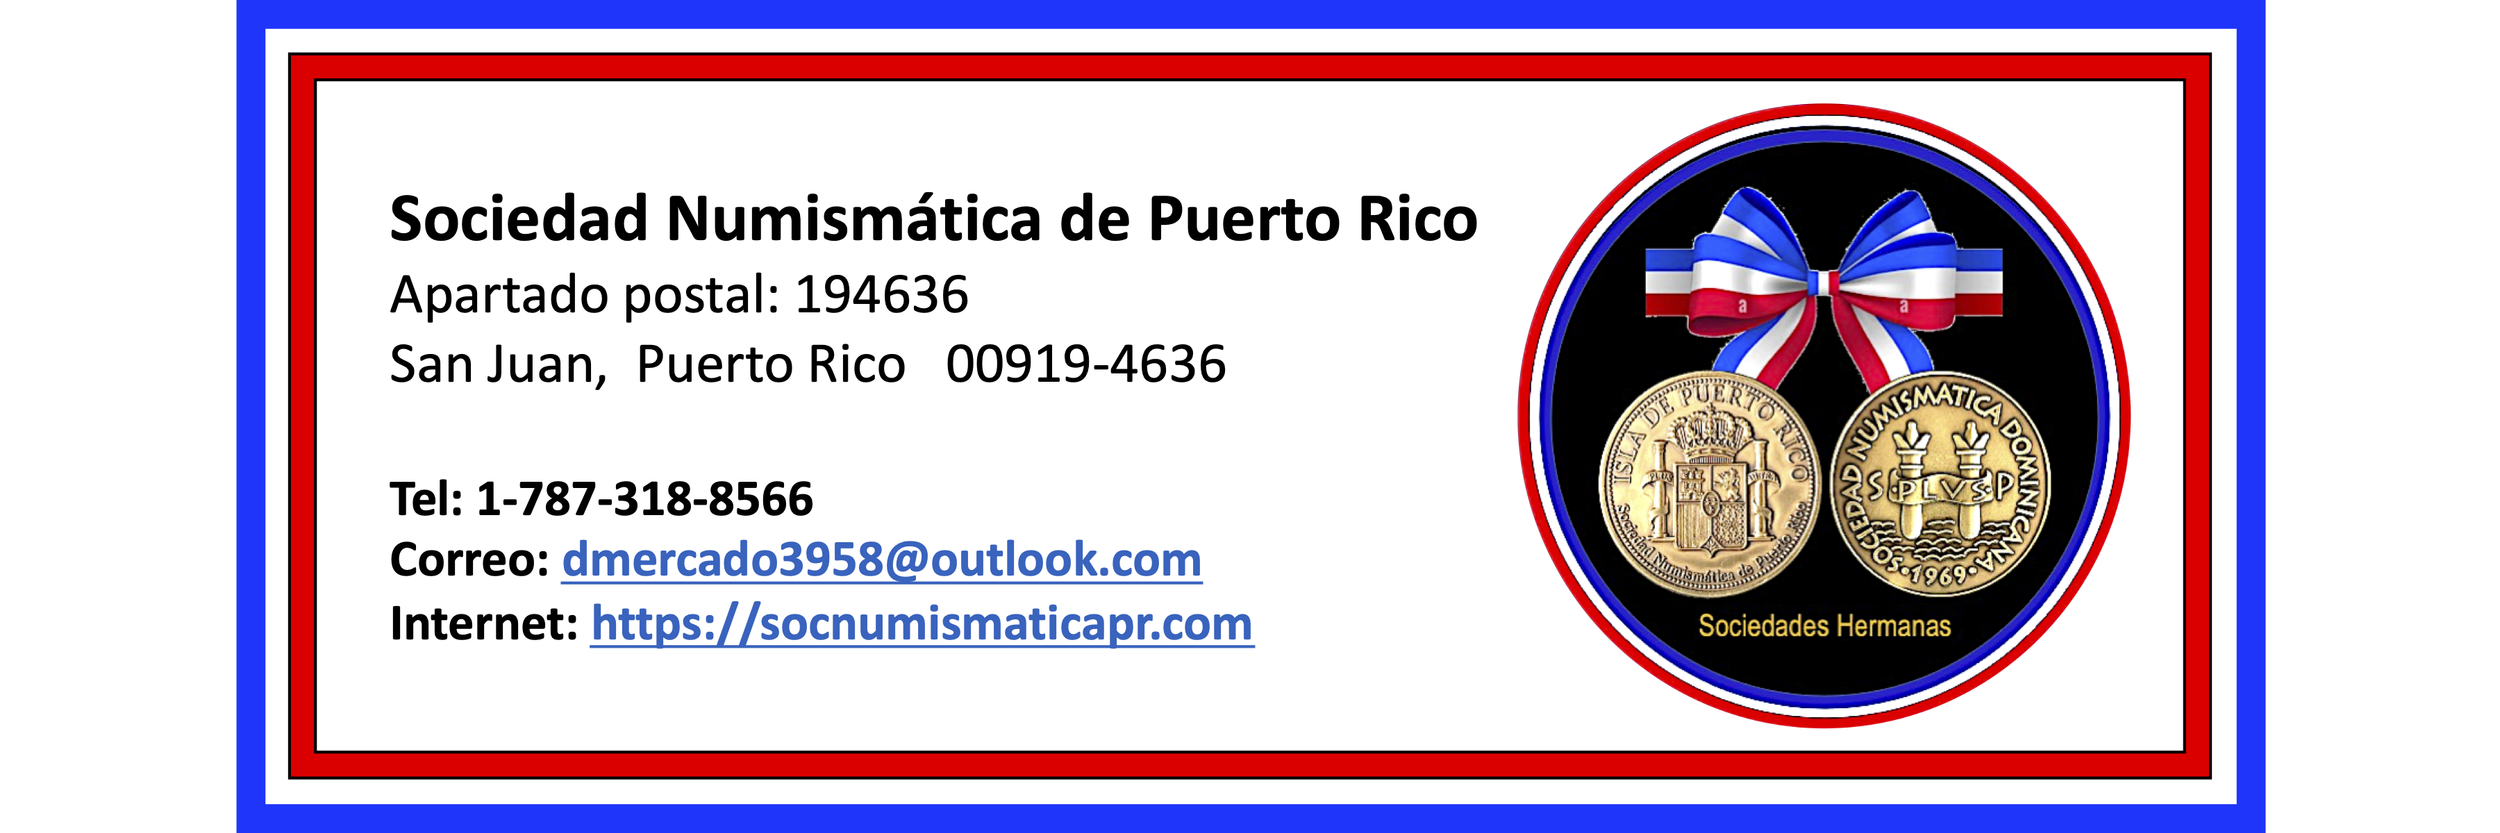 Sociedad Numismática de Puerto Rico